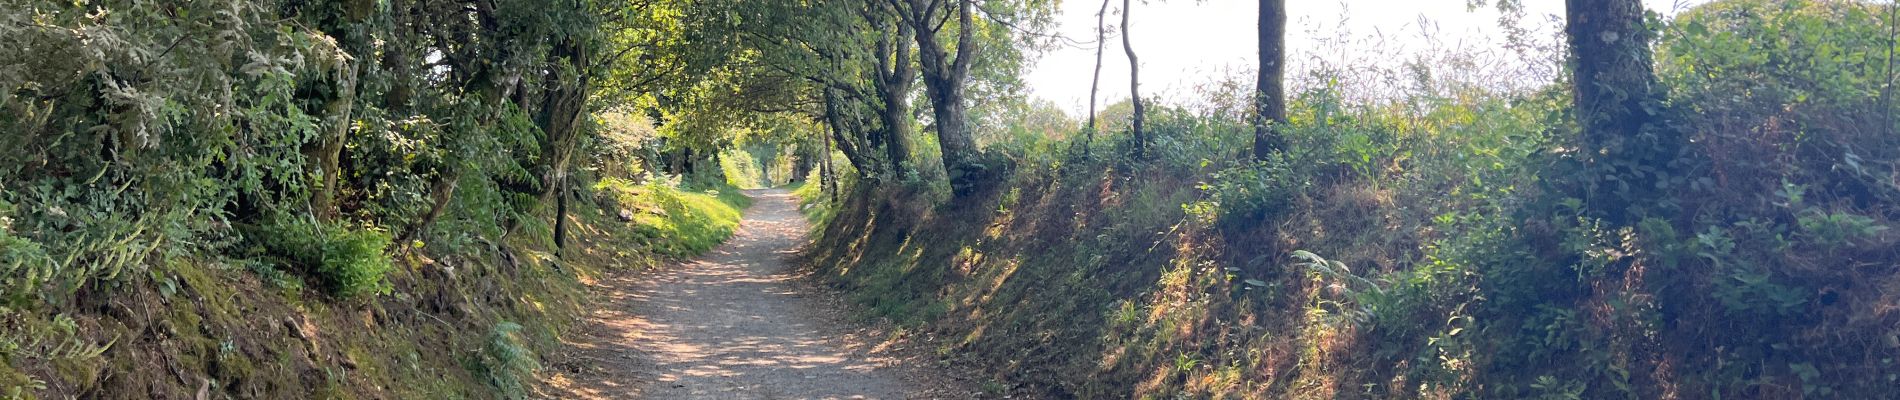 Trail Walking Portomarín - 2022 Camino de Santiago 3 - Photo